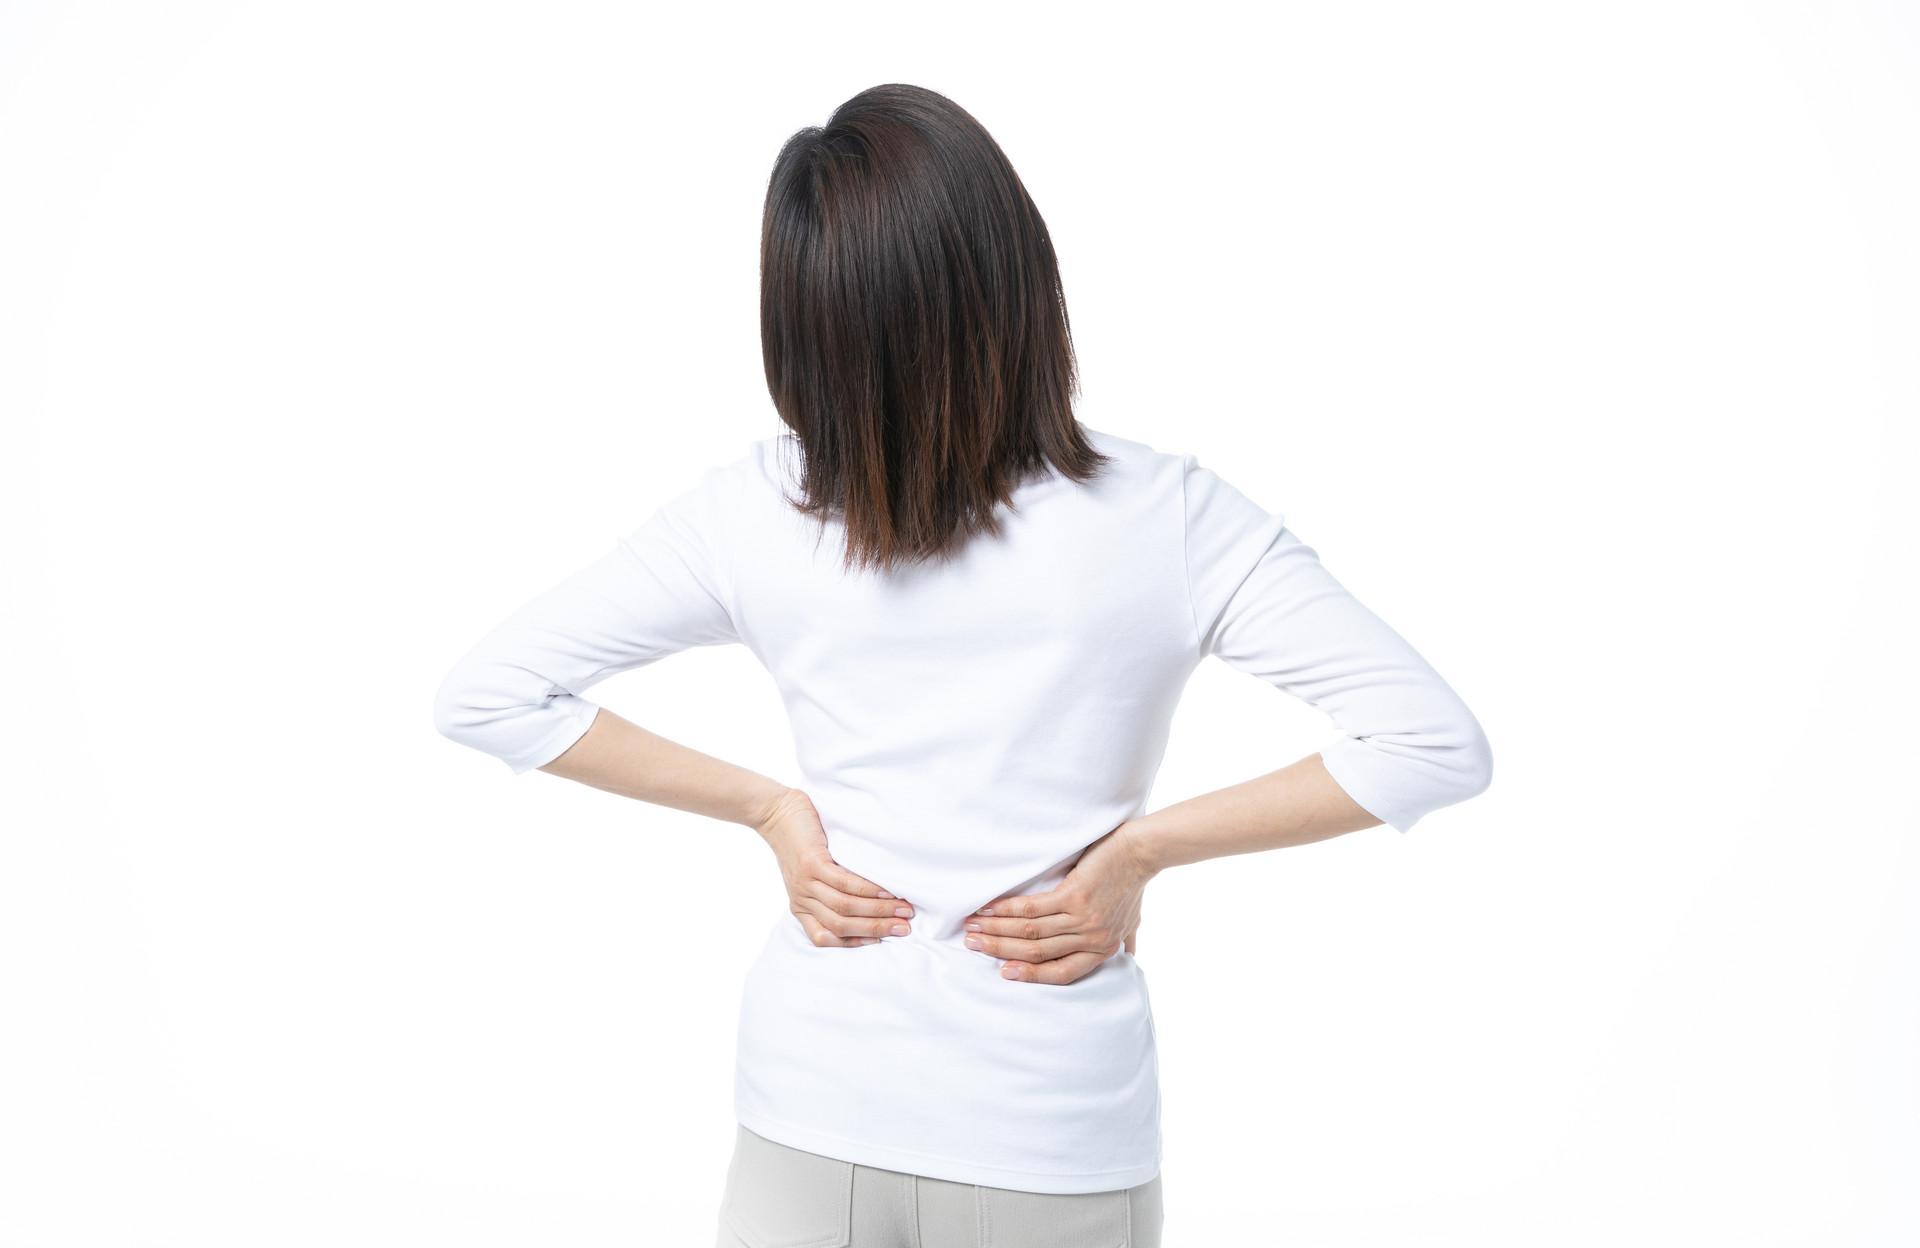 产后后腰疼痛是什么原因 这6种原因要知道